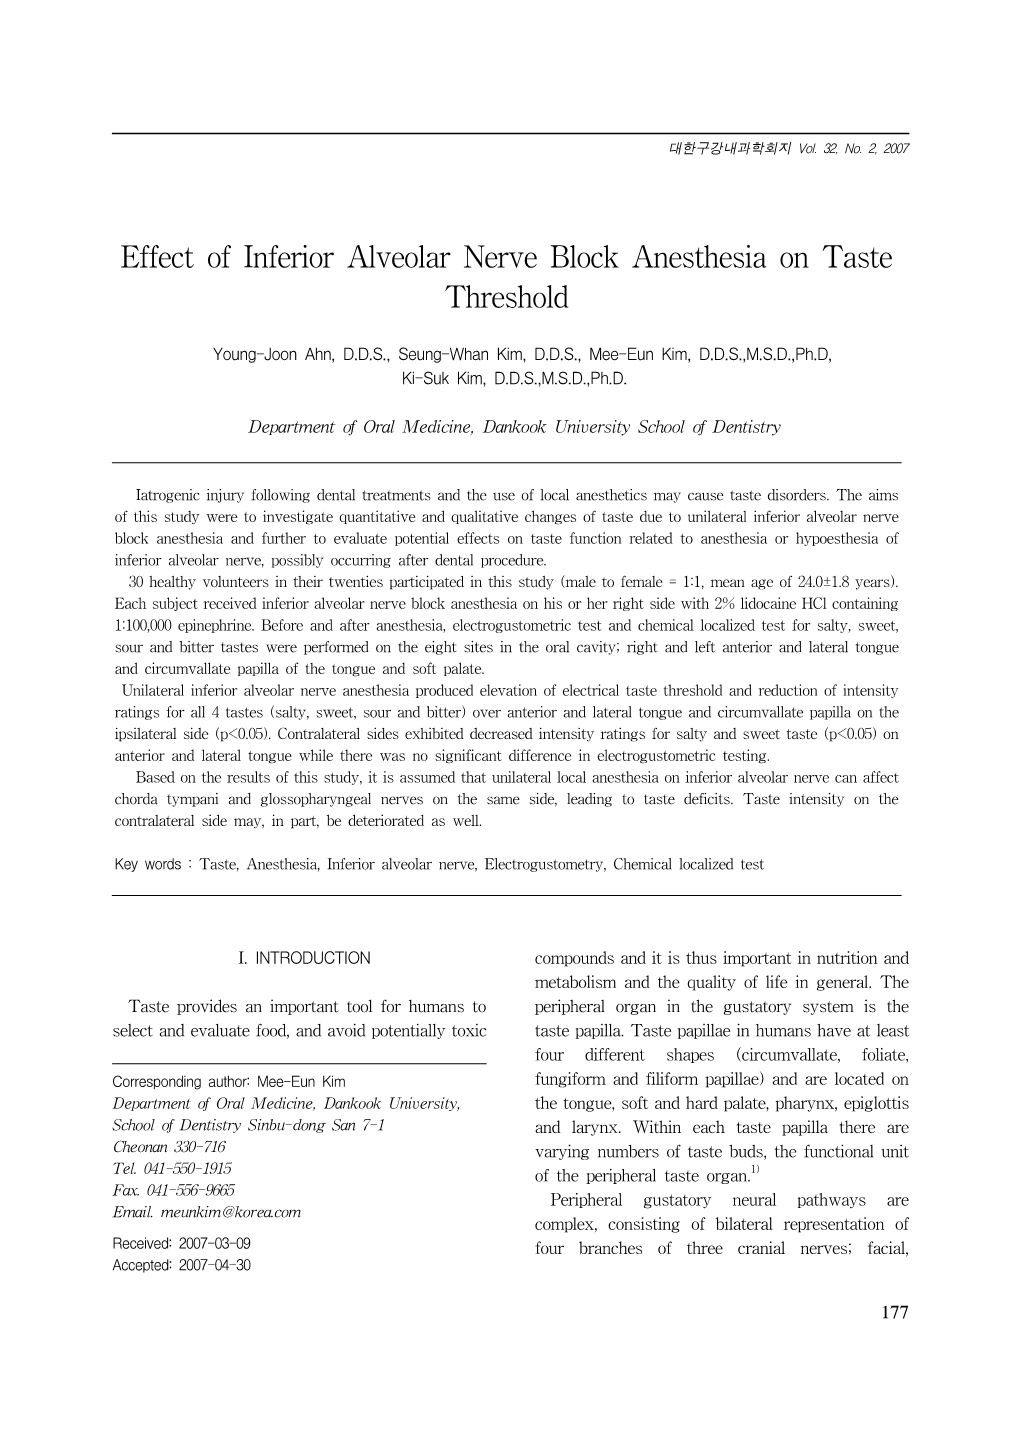 Effect of Inferior Alveolar Nerve Block Anesthesia on Taste Threshold